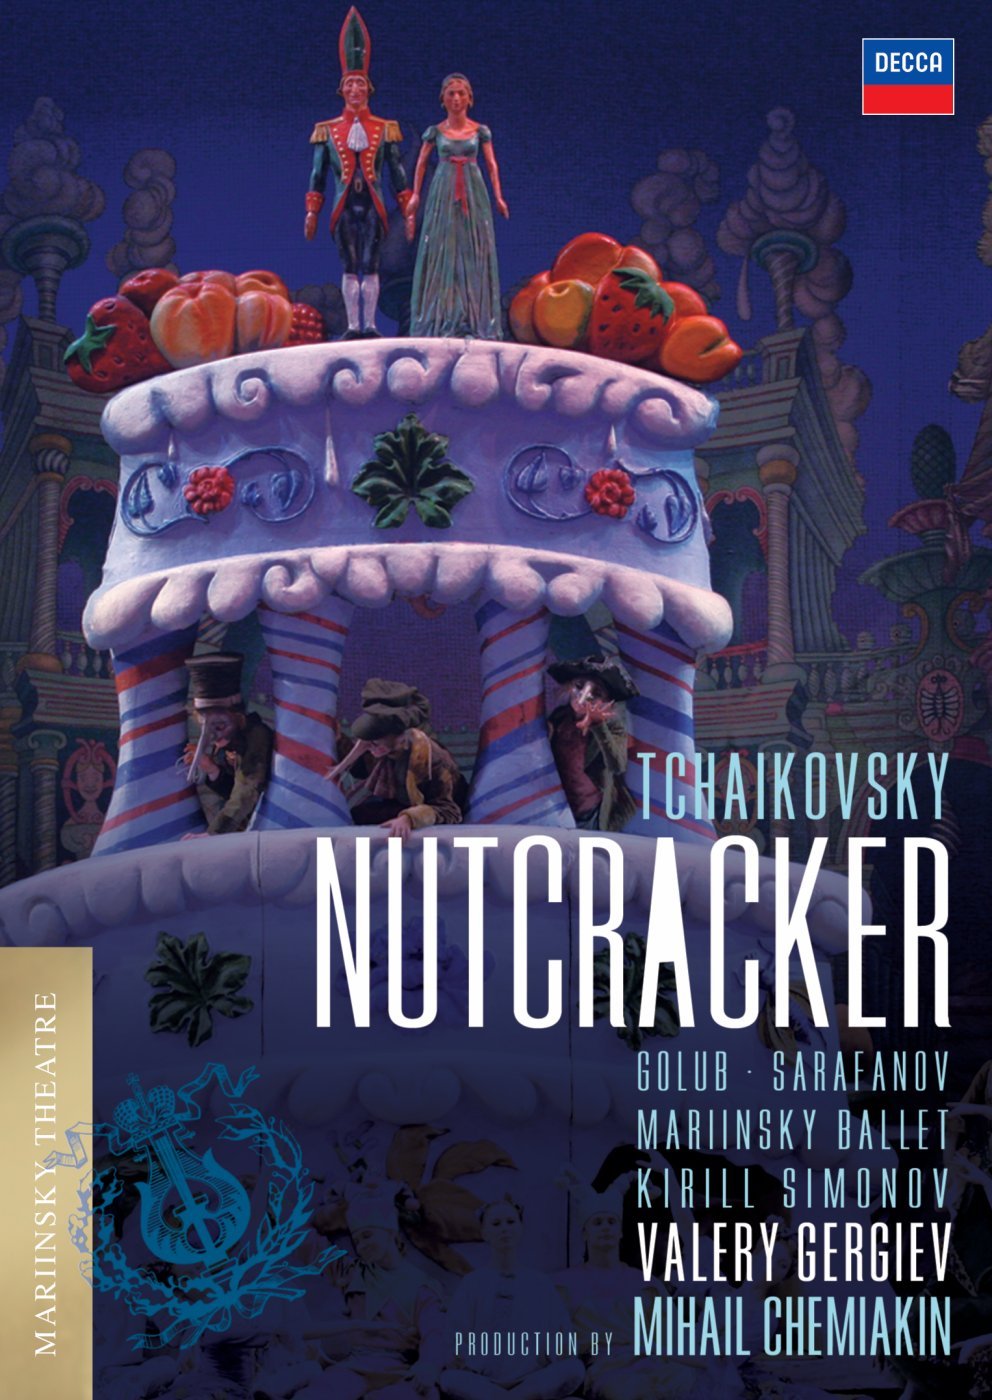 Tchaikovsky: Nutcracker on MovieShack